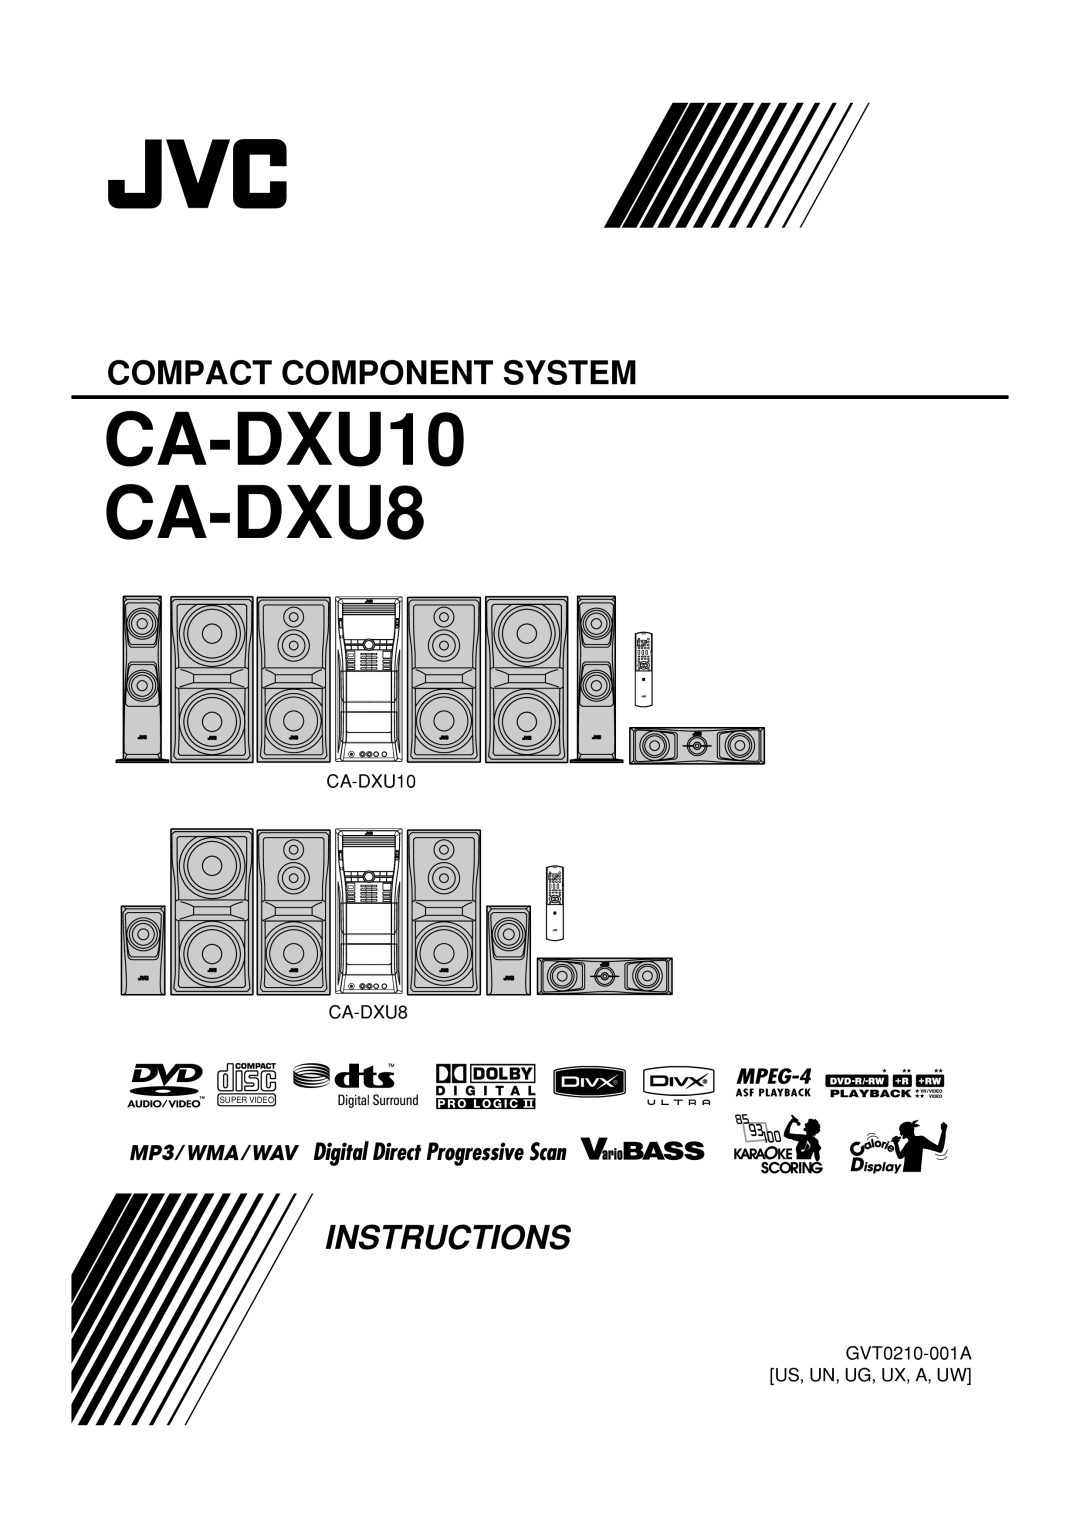 JVC manual CA-DXU10 CA-DXU8, Compact Component System, Instructions, GVT0210-001A US, UN, UG, UX, A, UW, Super Video 